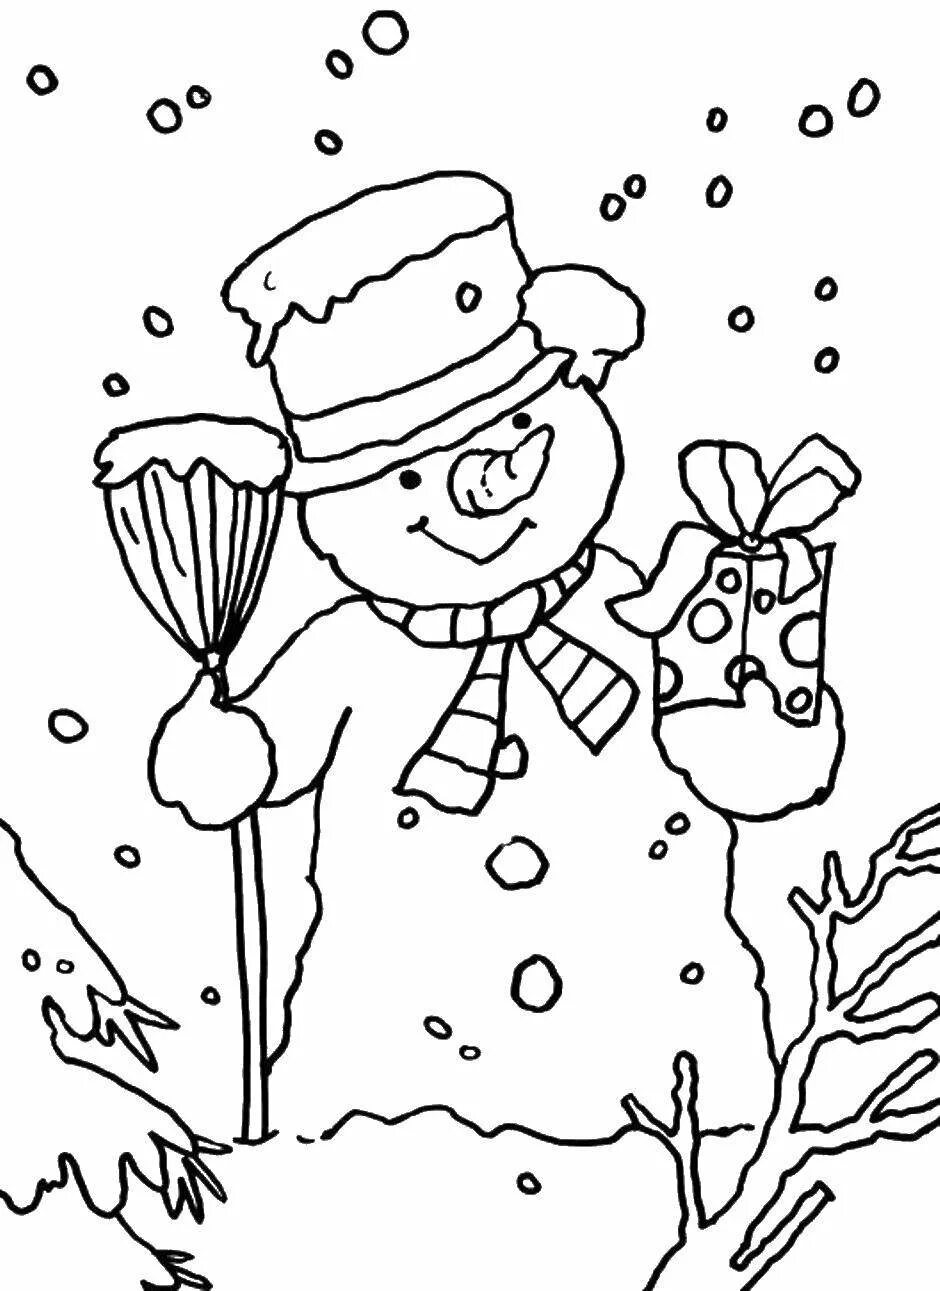 Раскрасим снег. Снеговик раскраска. Снеговик раскраска для детей. Раскраска зима. Зимние раскраски Снеговик.